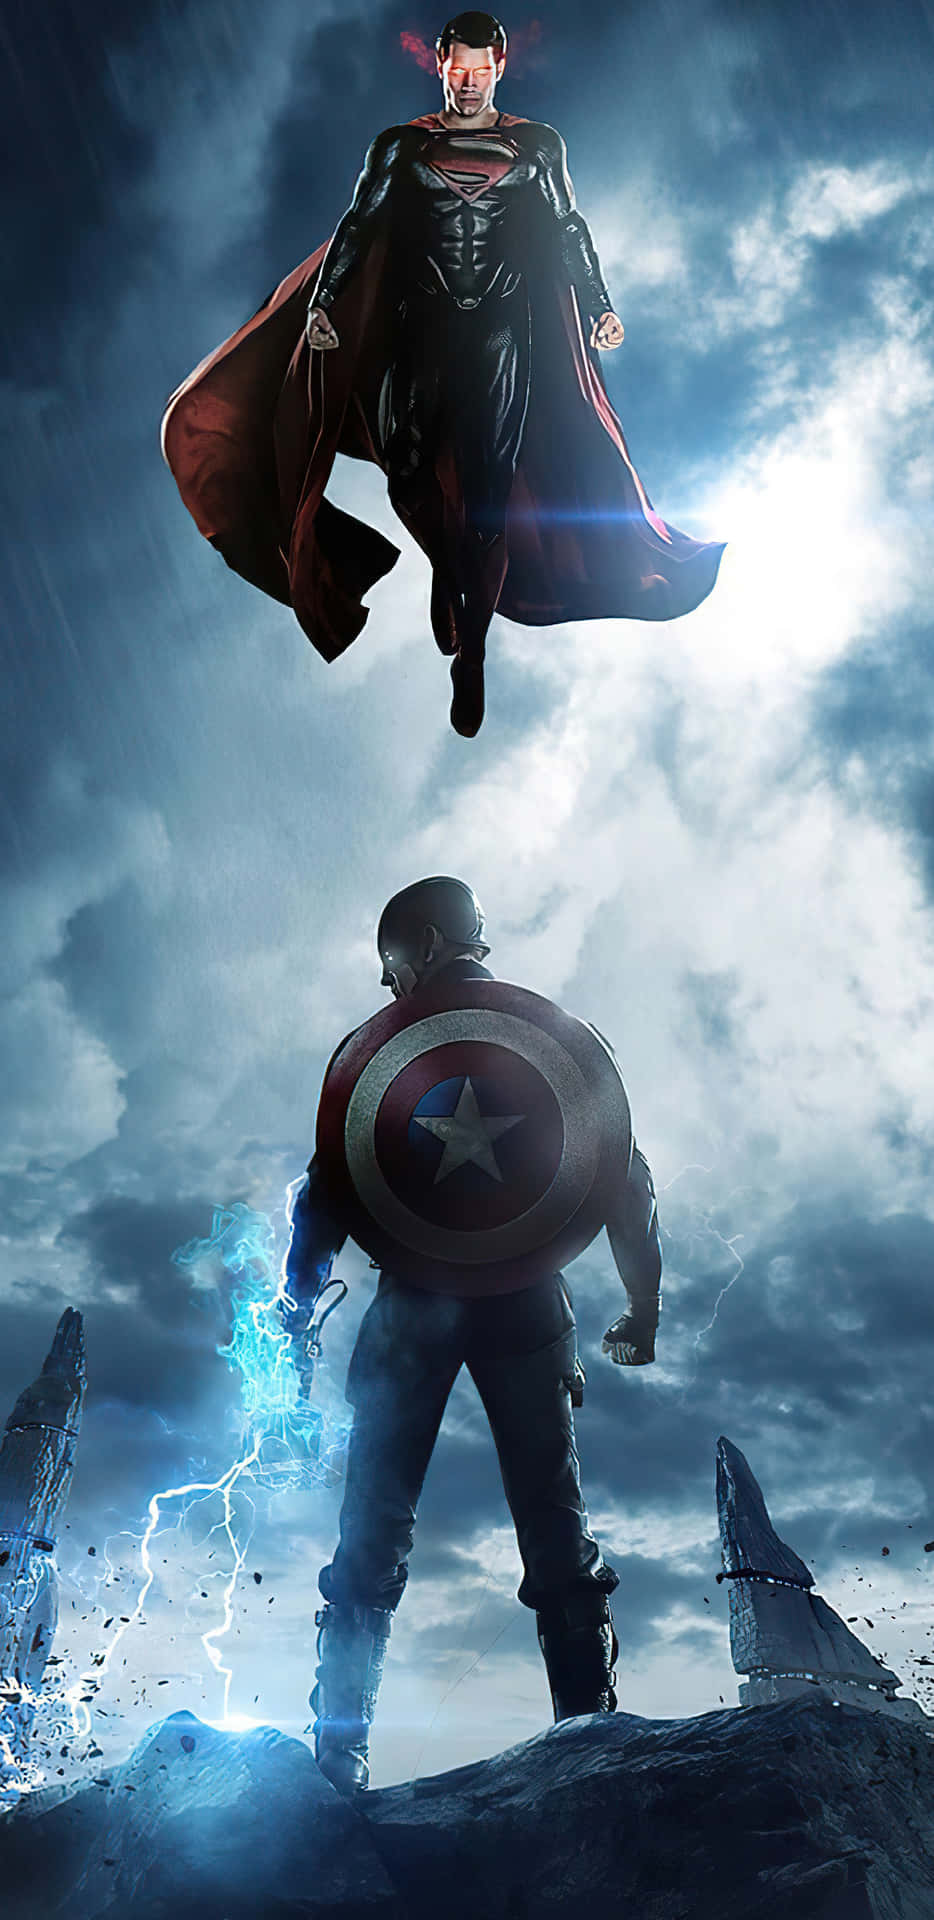 Pixel3xl Hintergrund Mit Captain America Und Superman